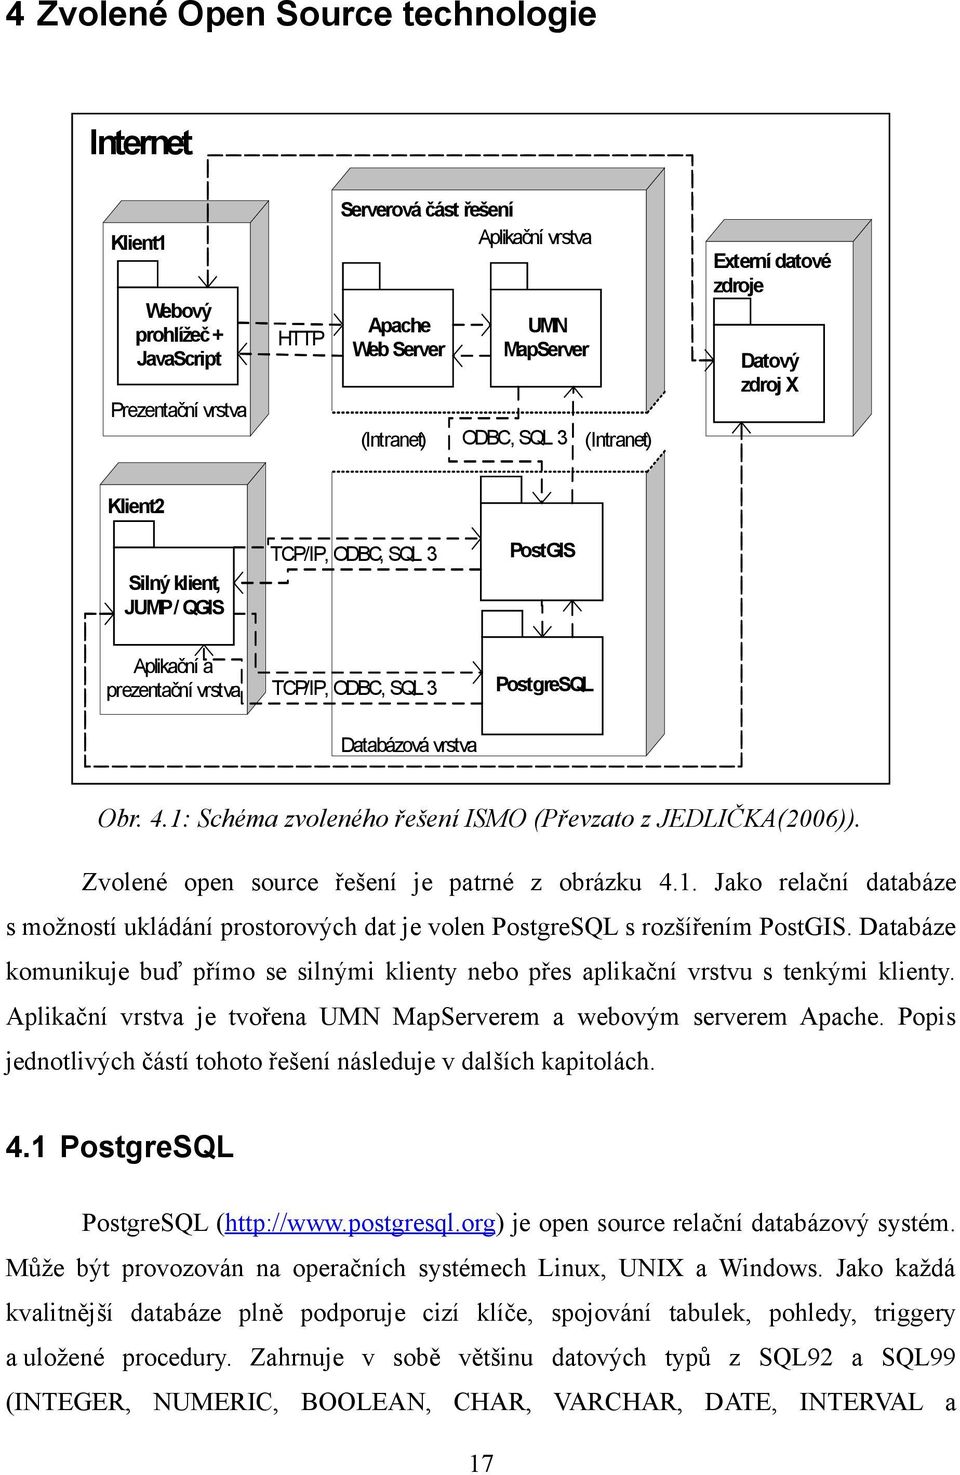 4.1: Schéma zvoleného řešení ISMO (Převzato z JEDLIČKA(2006)). Zvolené open source řešení je patrné z obrázku 4.1. Jako relační databáze s možností ukládání prostorových dat je volen PostgreSQL s rozšířením PostGIS.